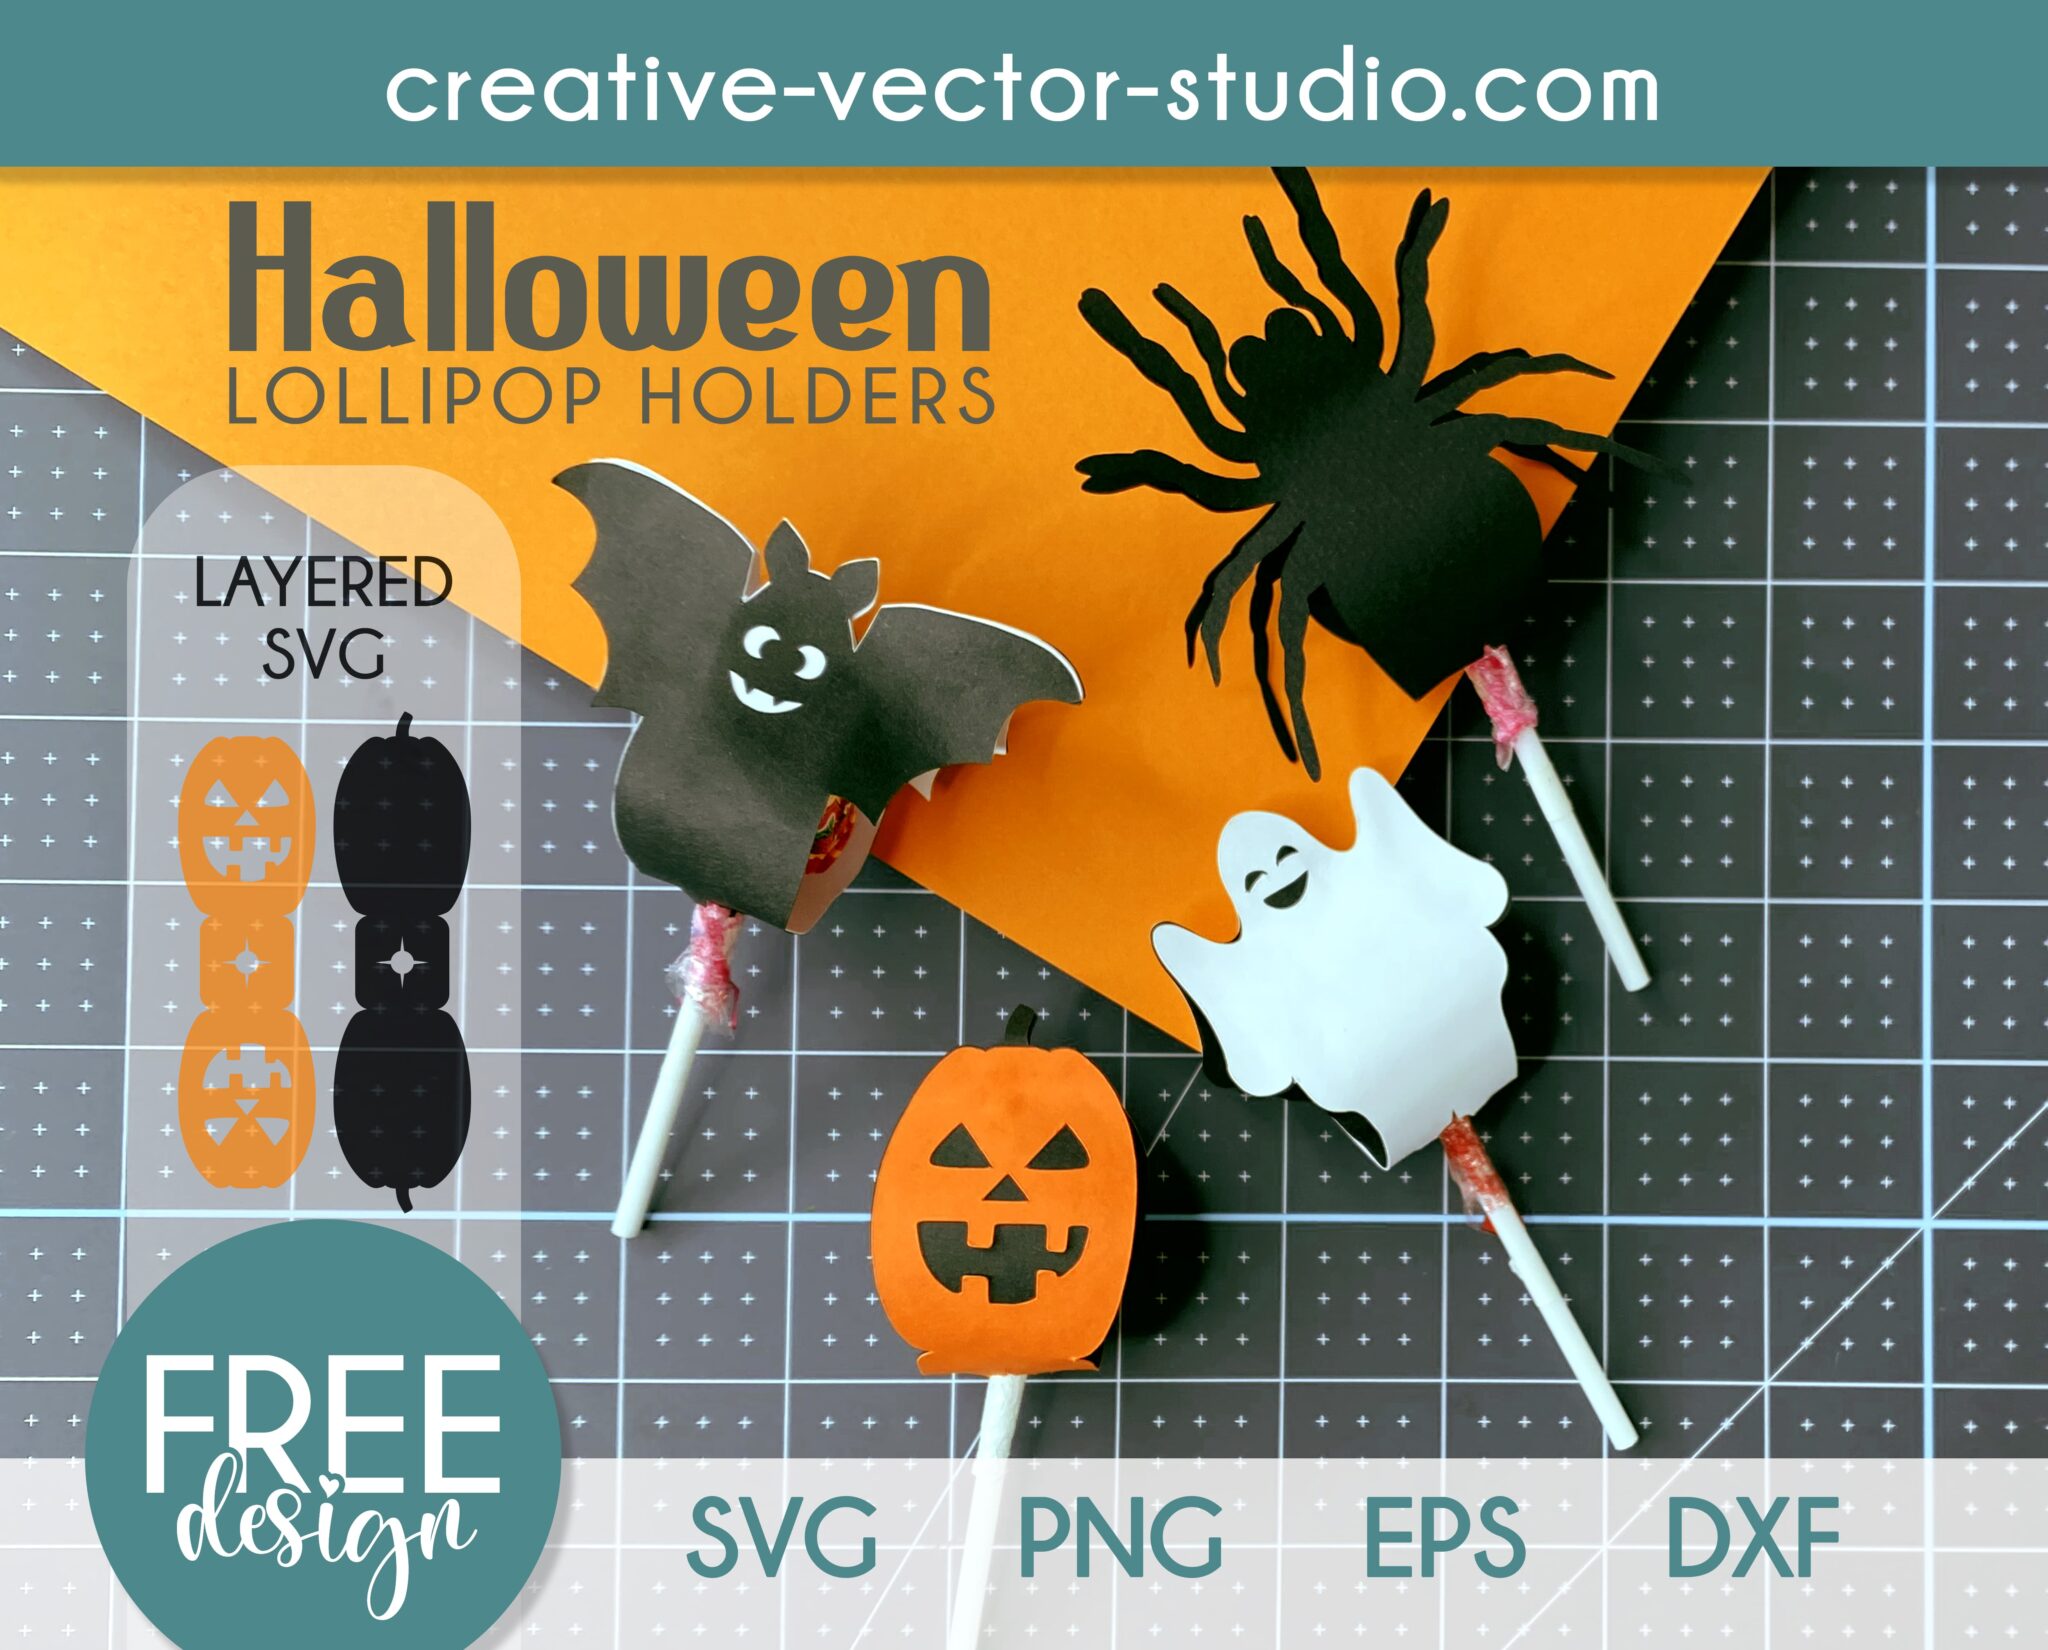 Free Halloween Lollipop Holder Templates - Creative Vector Studio